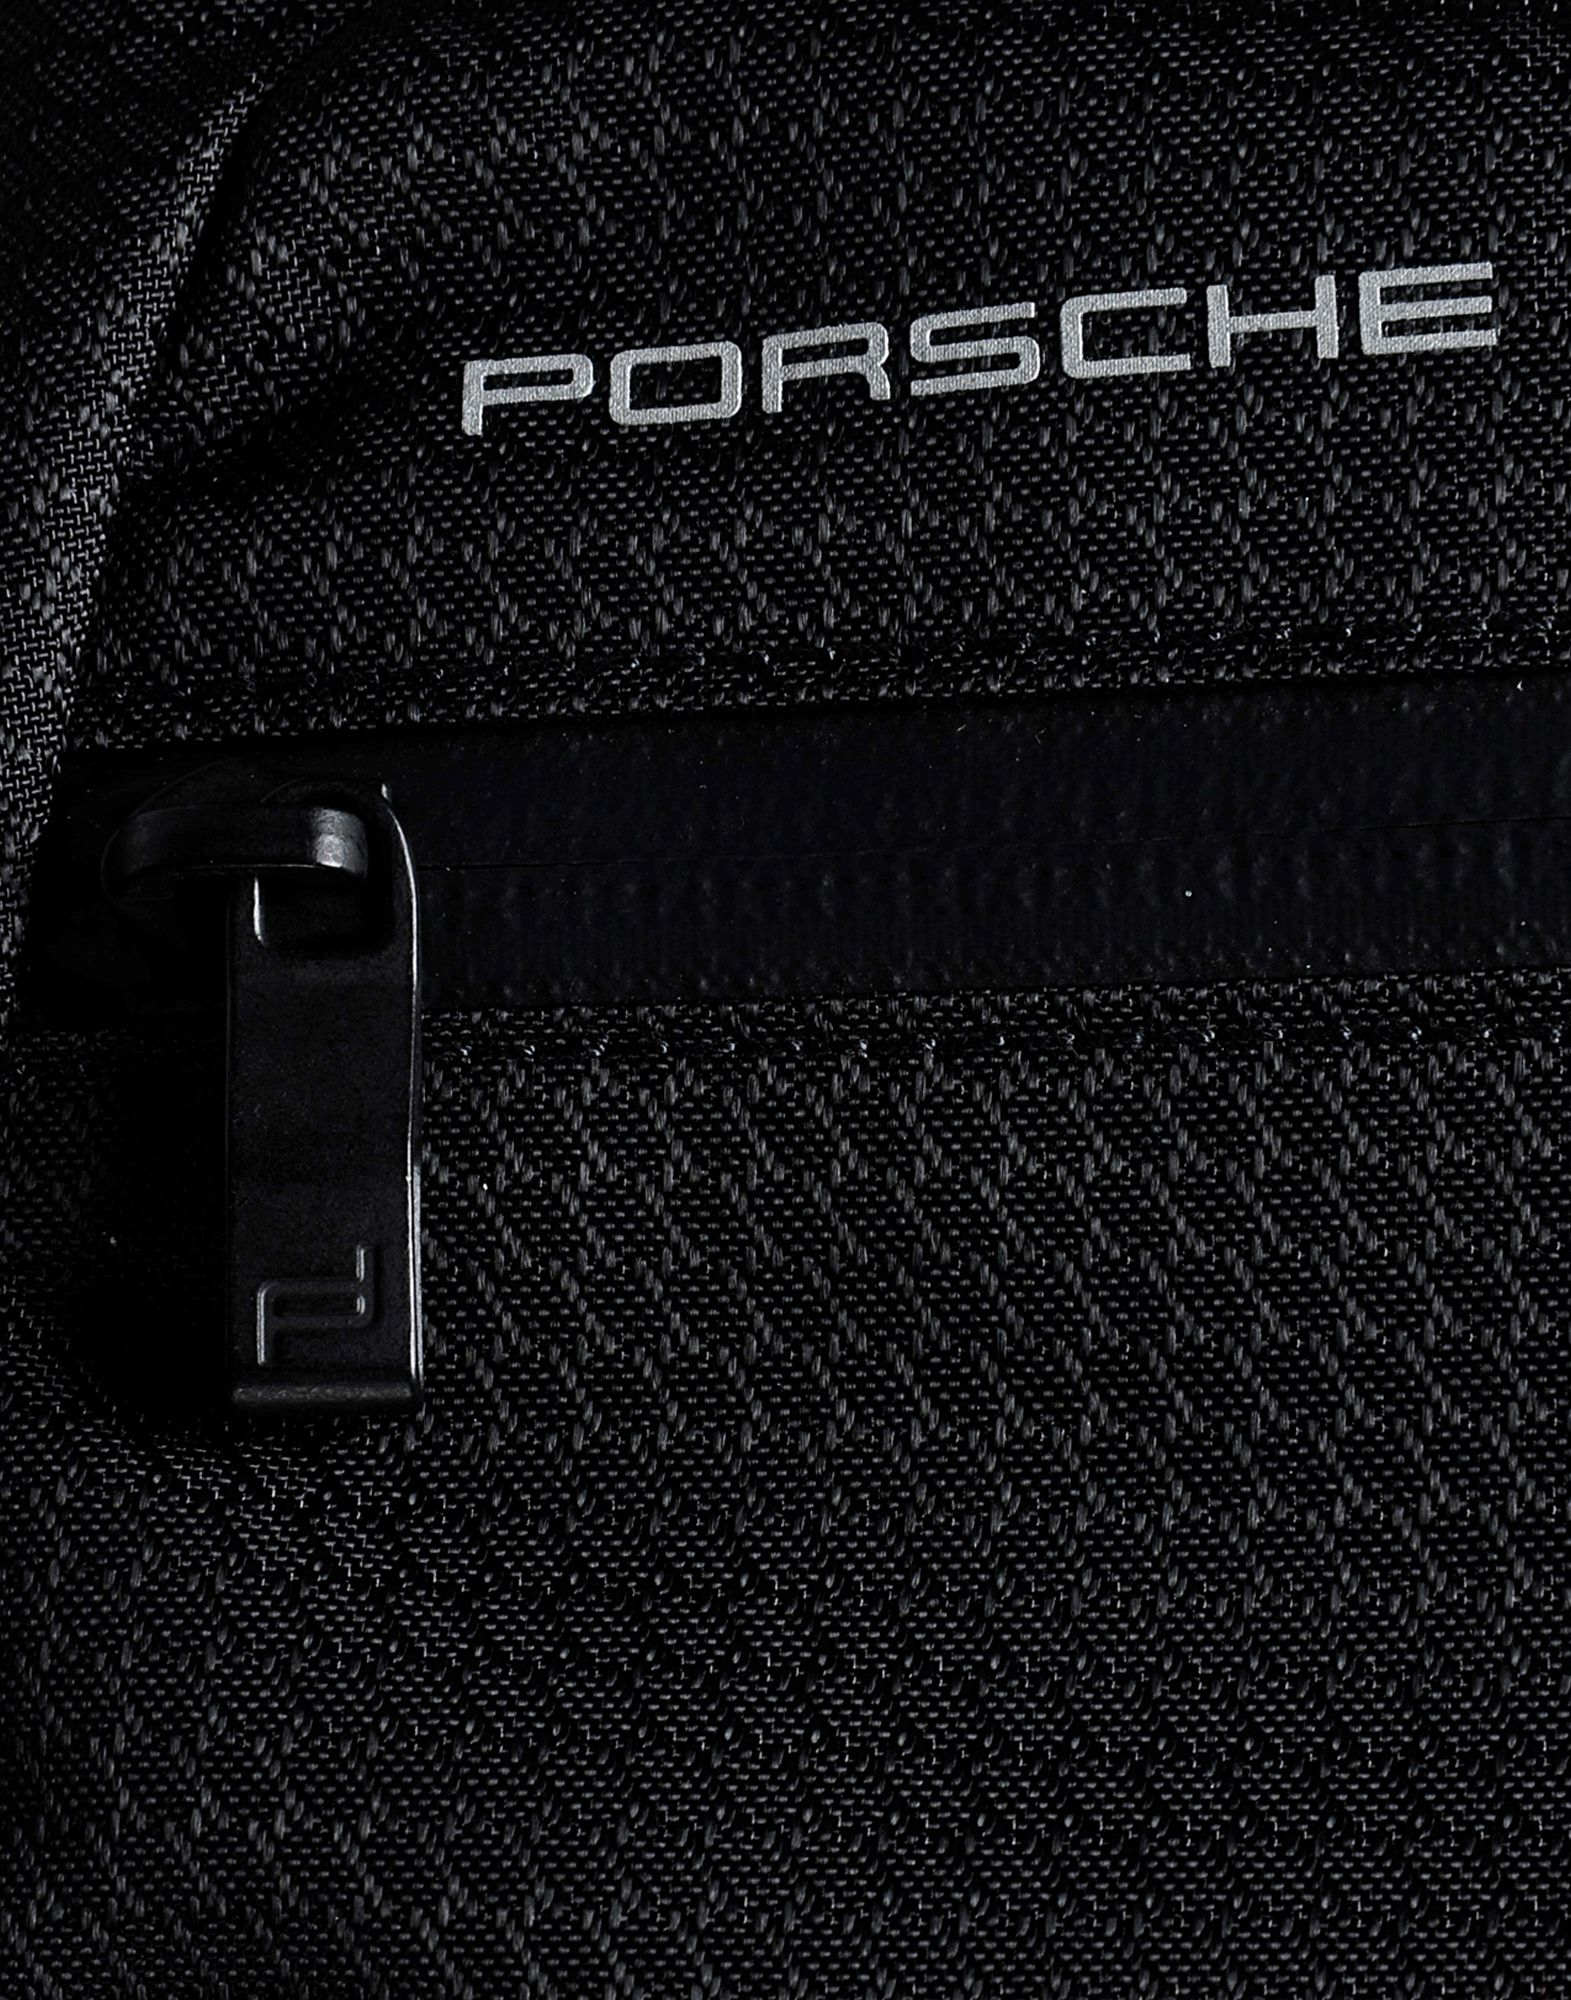 Men shoulder bag Porsche Design Roadster S black leather slim casual  crossbody